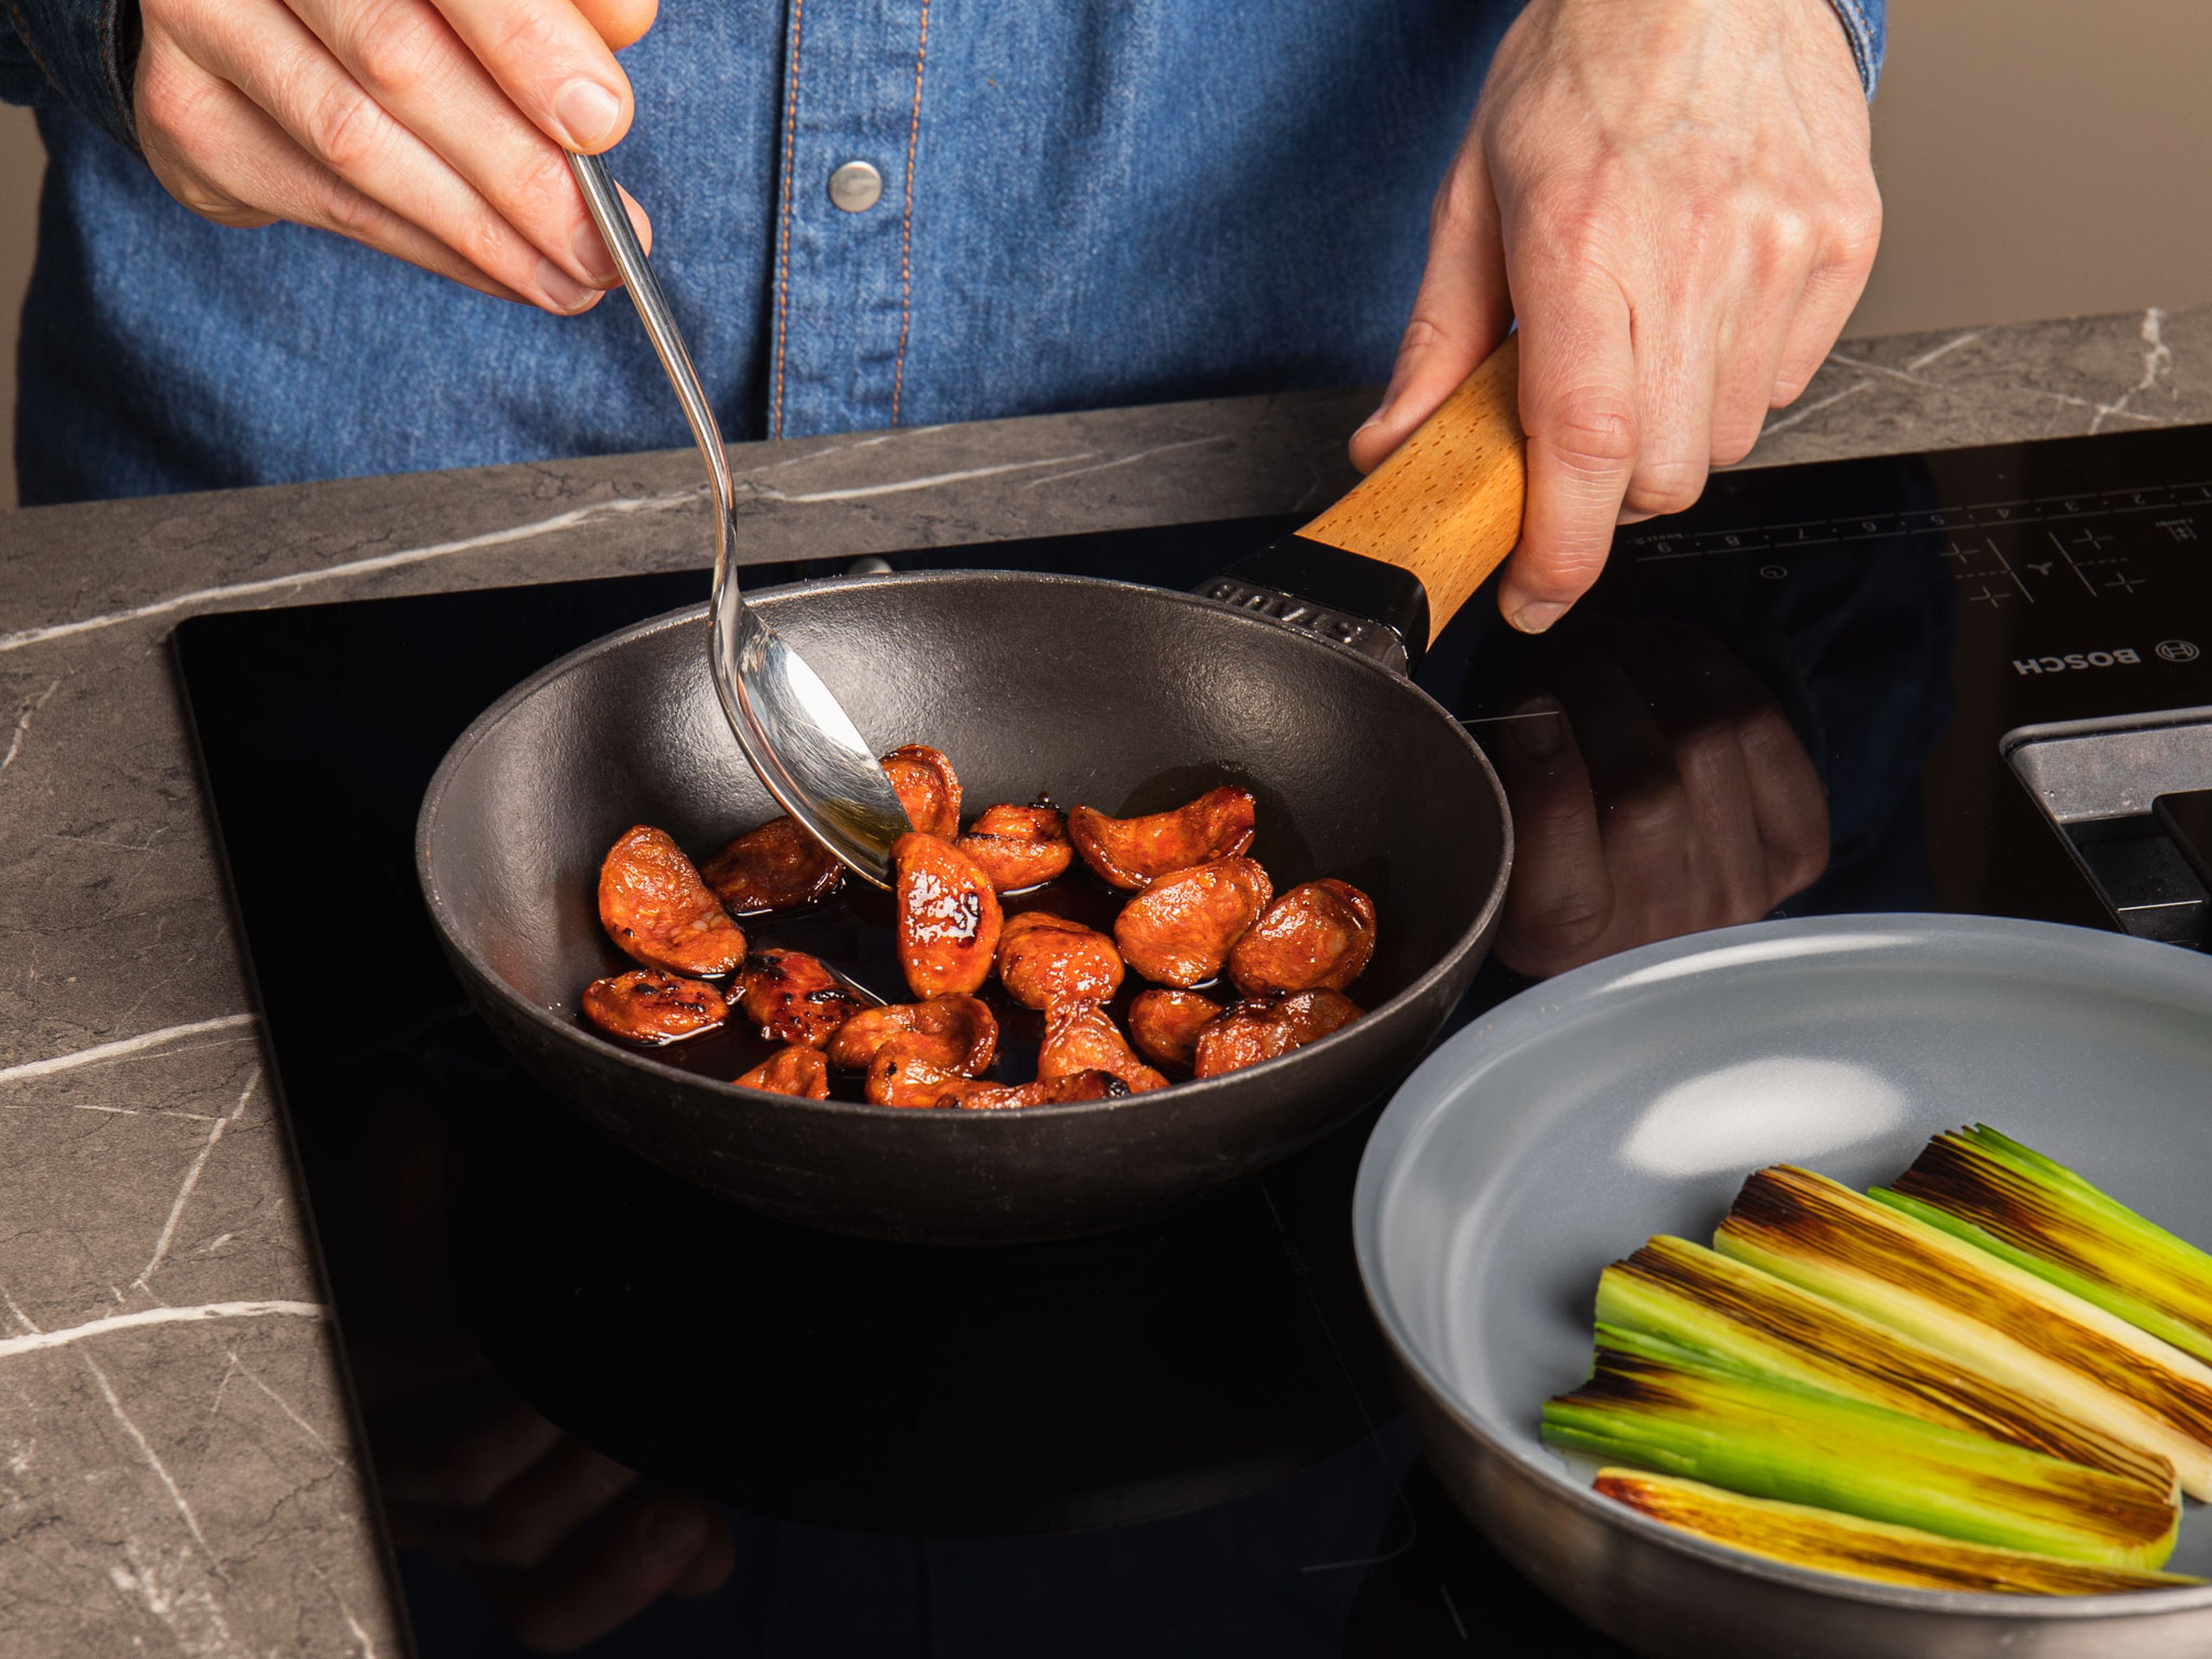 Die Chorizo diagonal in 5mm Scheiben schneiden und mit etwas Öl bei mittlerer Hitze auslassen und auf jeder Seite ca. 2 Min. knusprig braten.